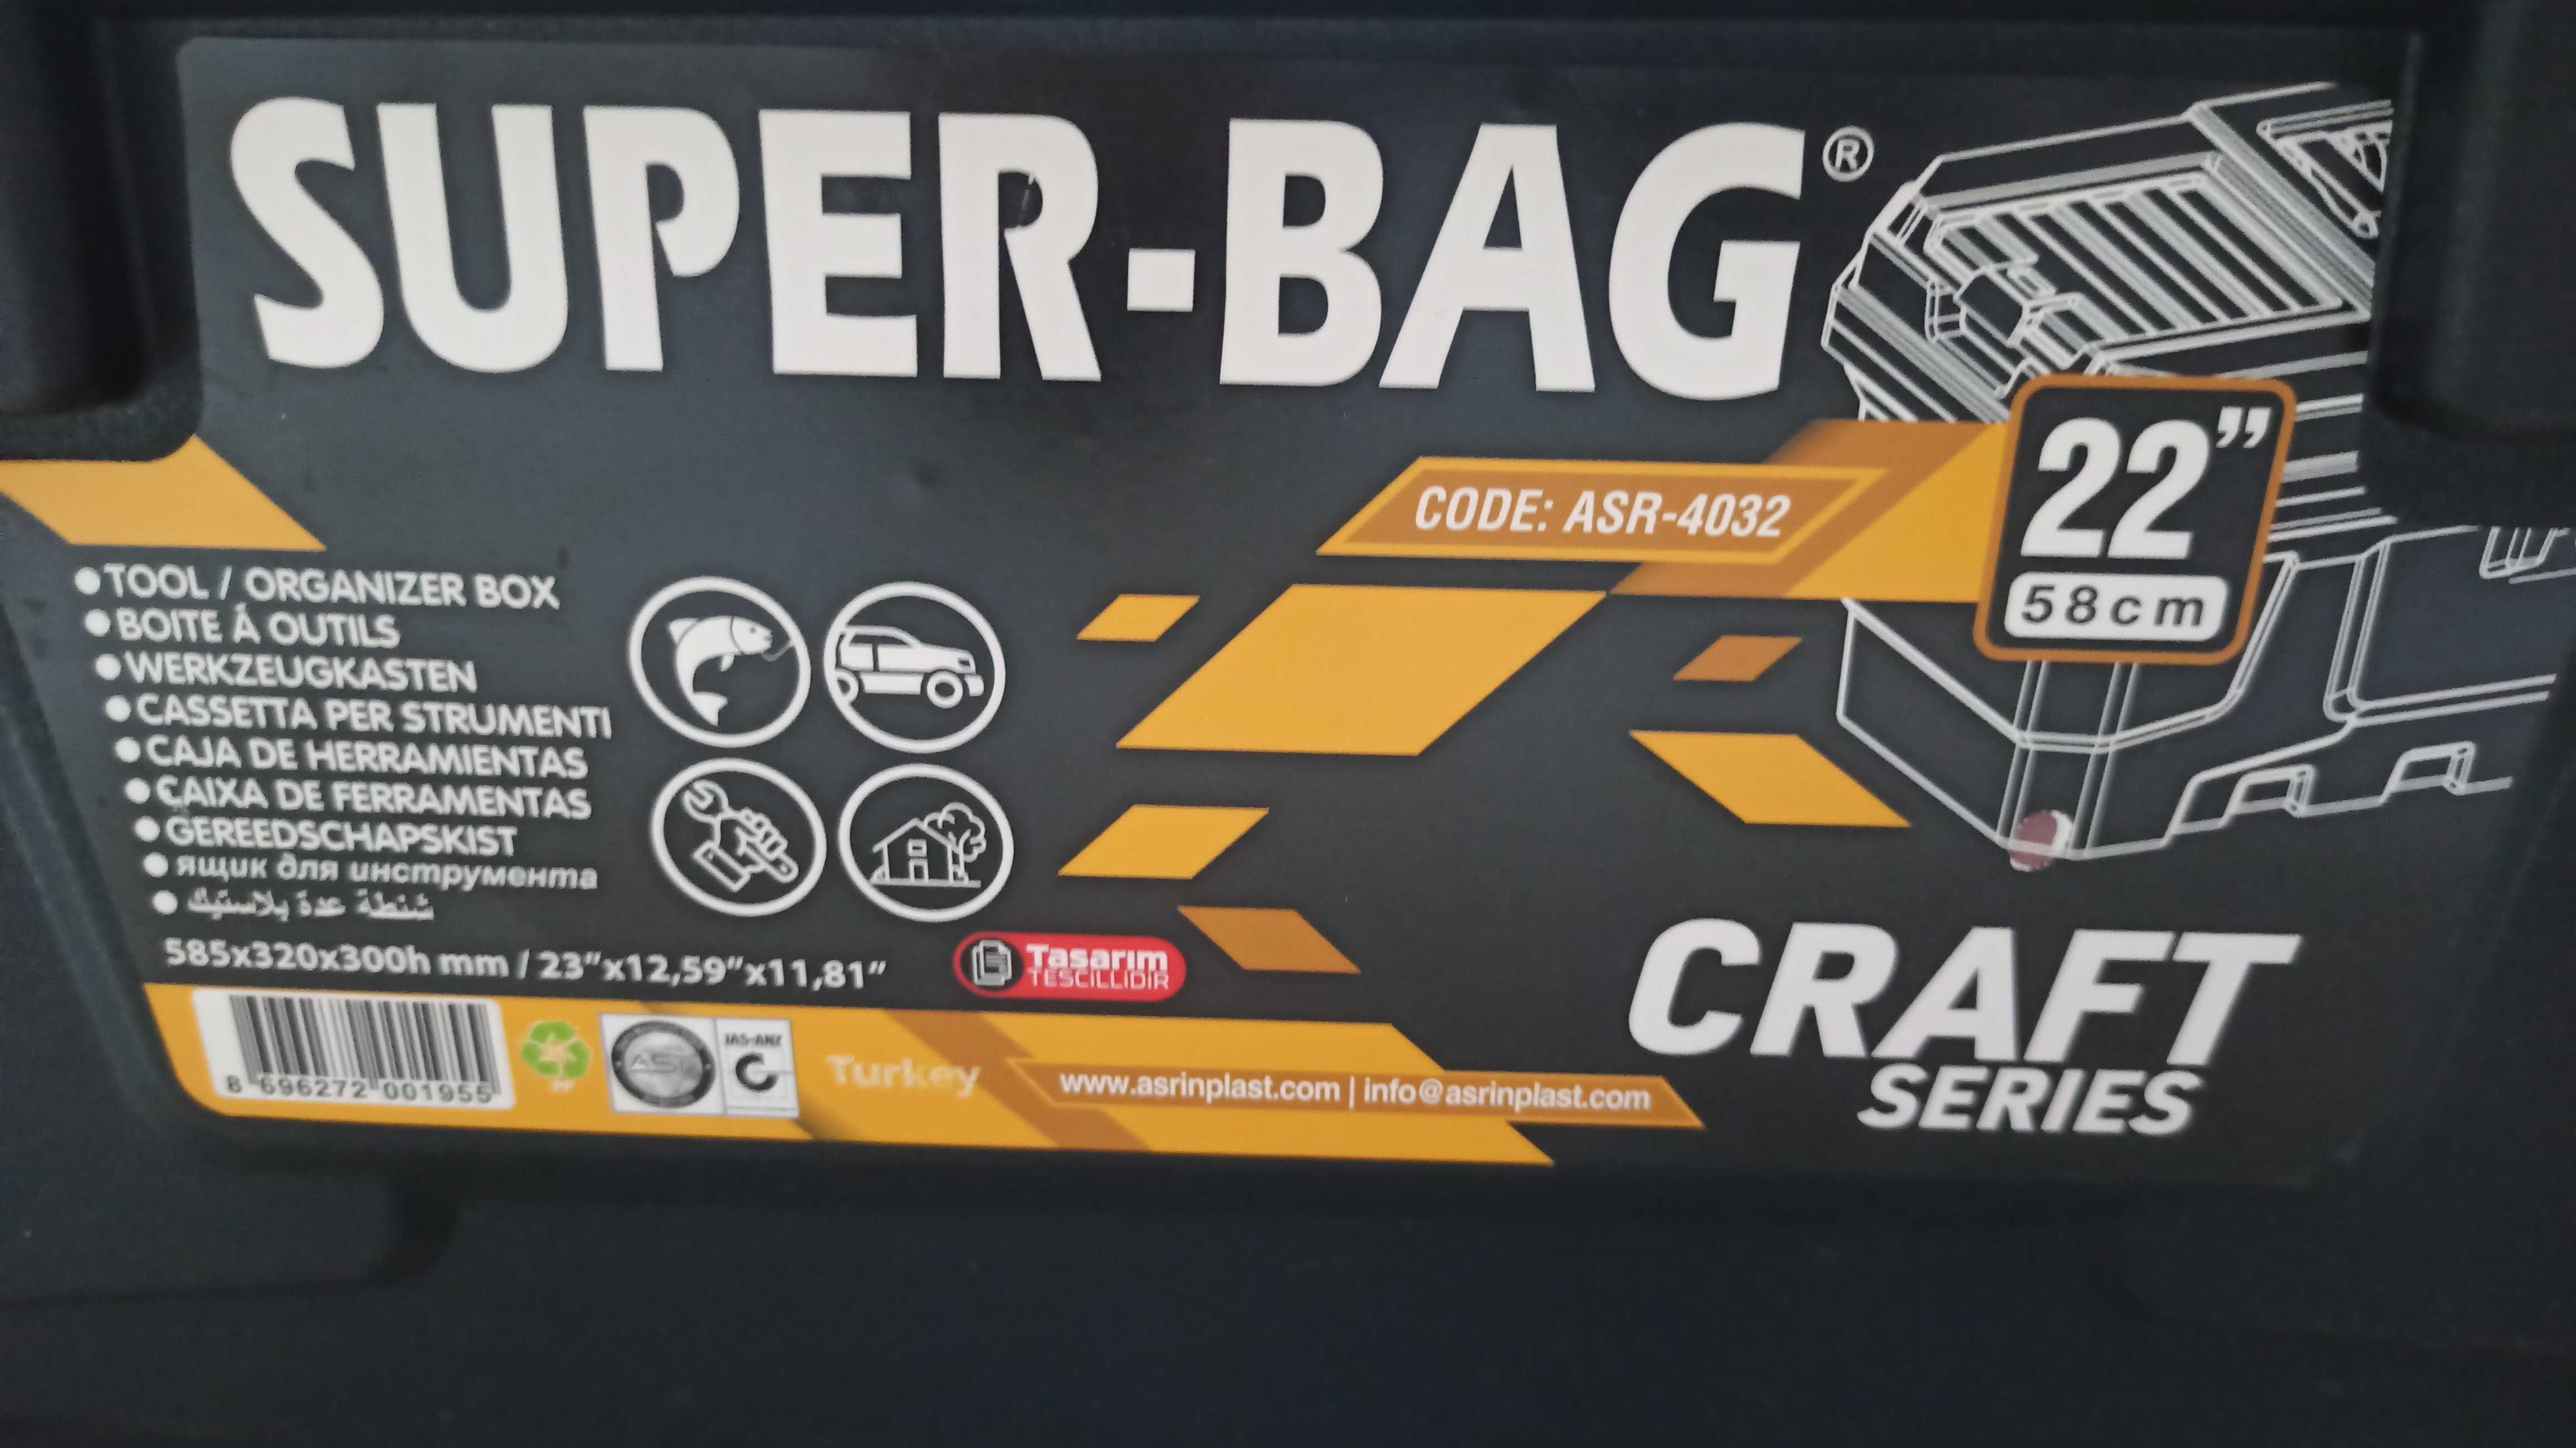 Skrzynia narzędziowa Super Bag 22"/58 cm